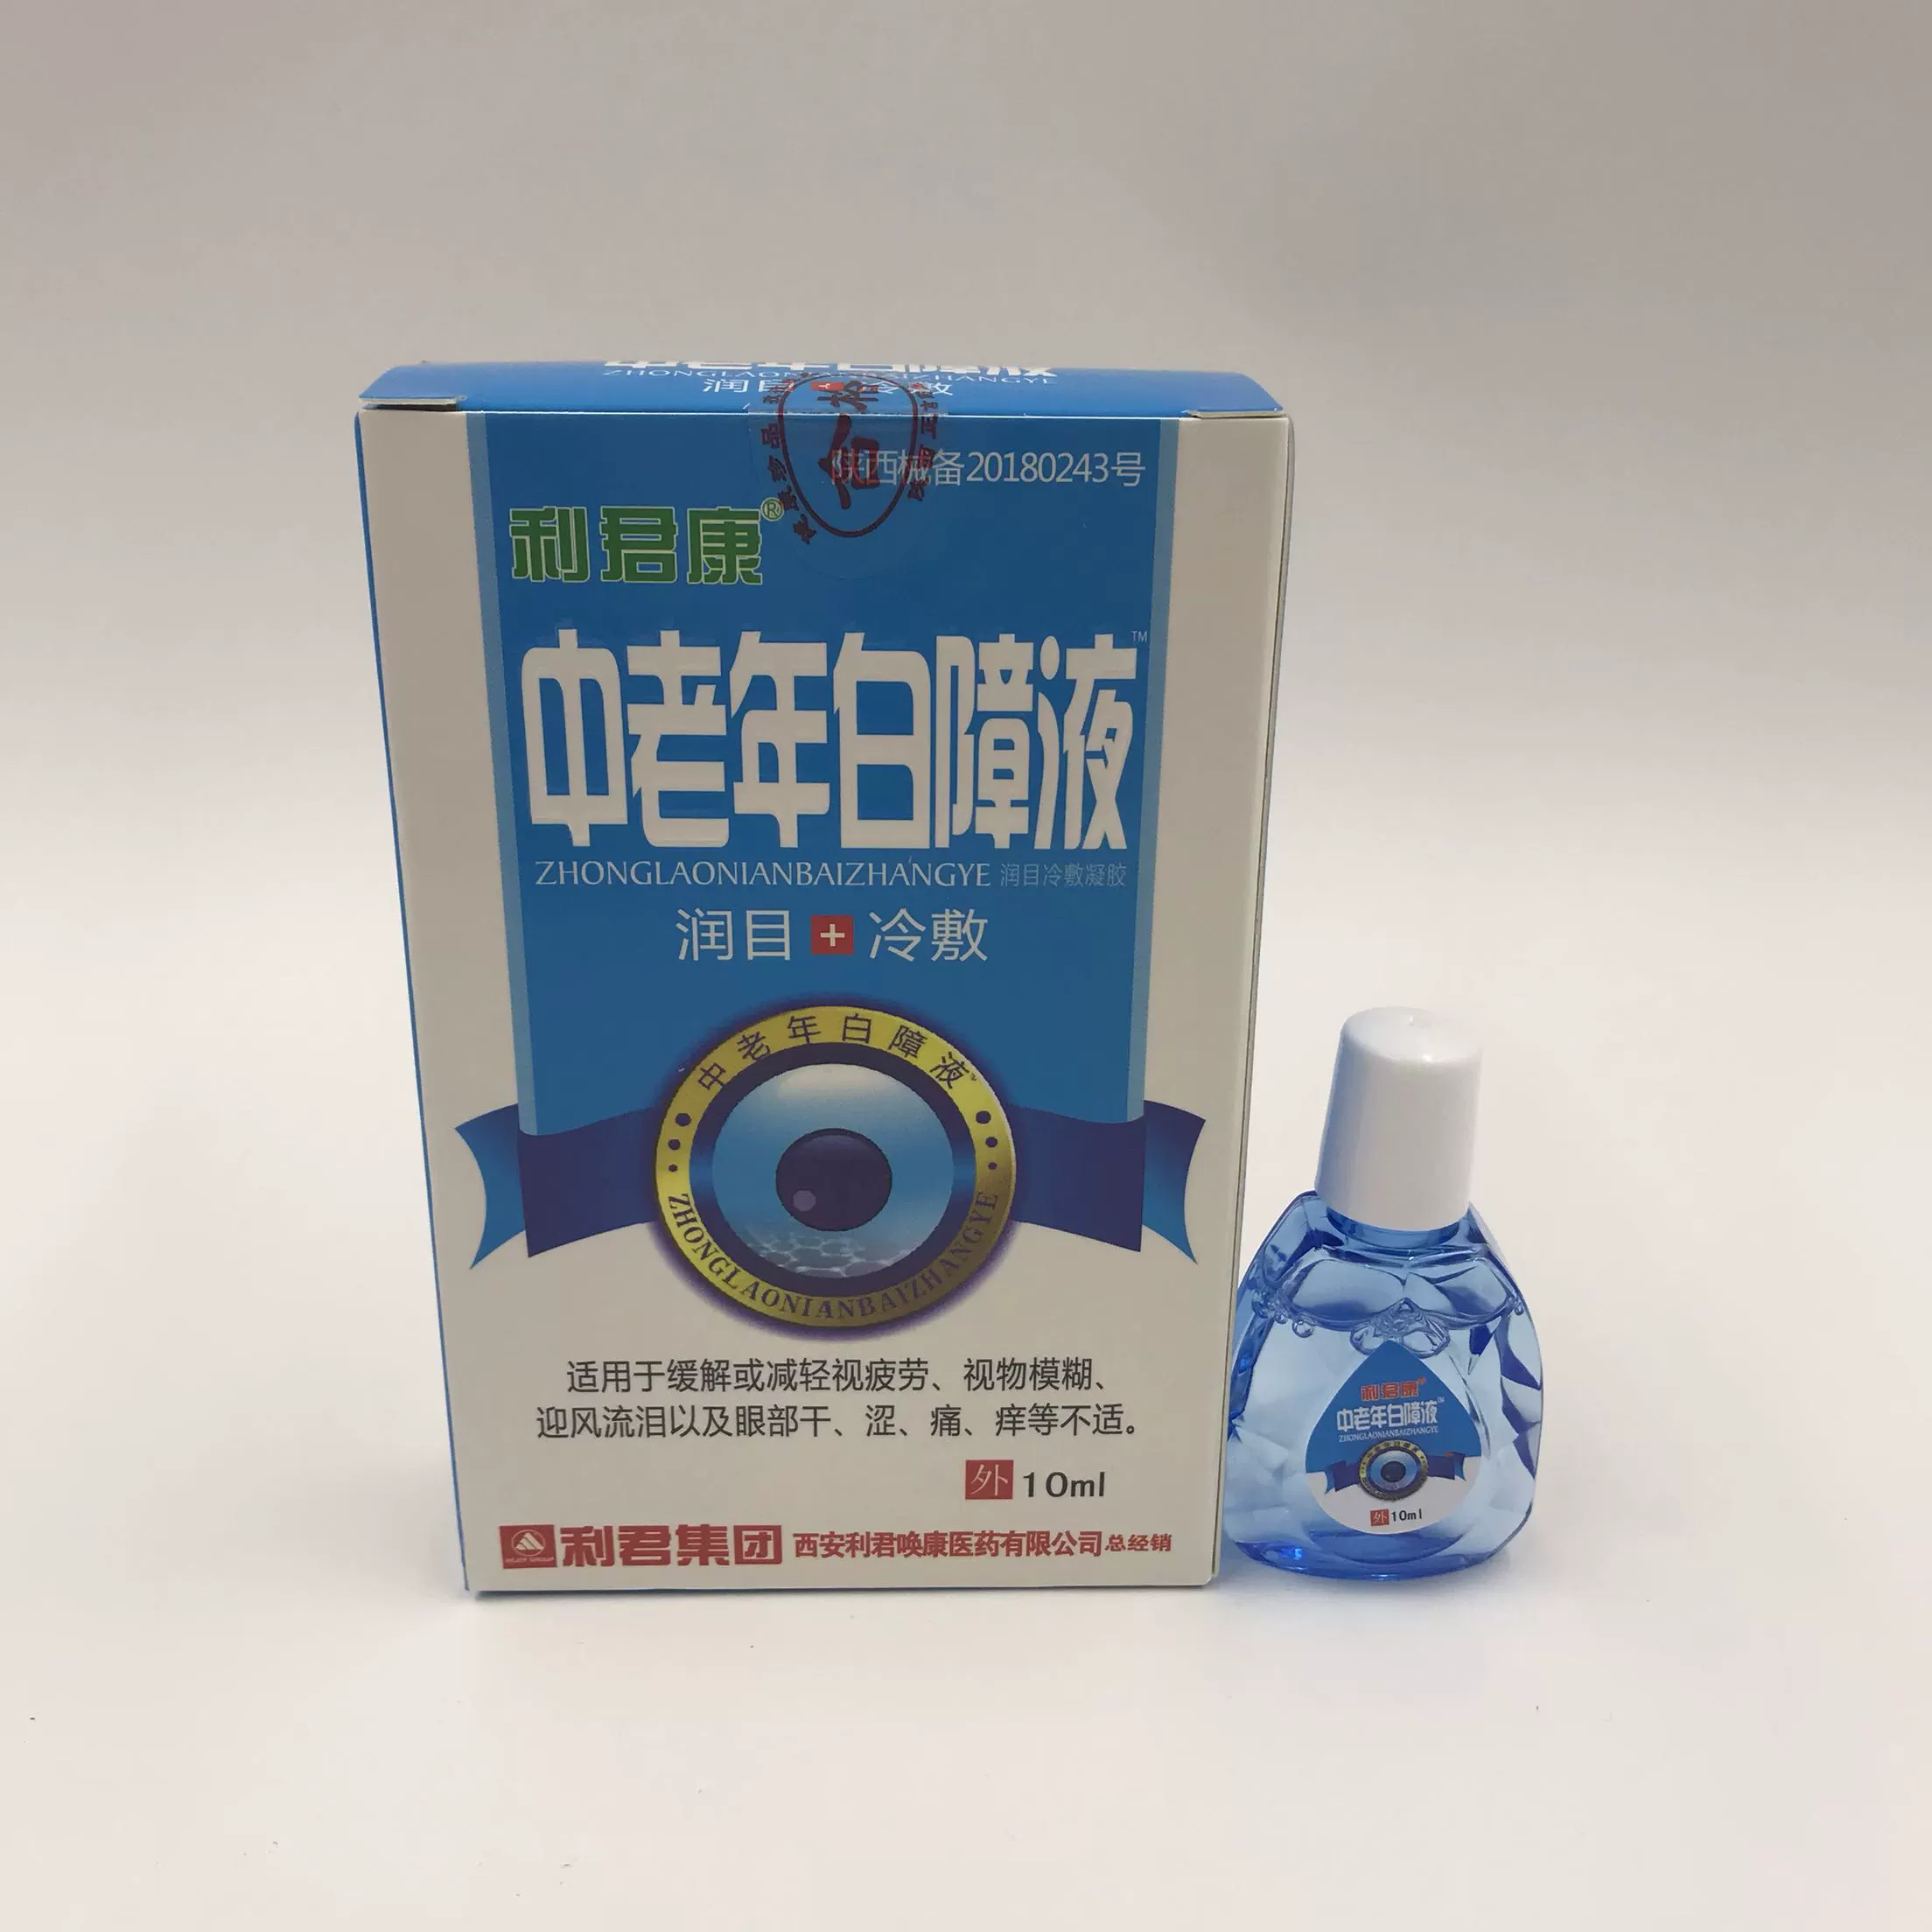 Mua 3 tặng 2 Dung dịch đục thủy tinh thể Lijunkang Thuốc nhỏ mắt Giải pháp chăm sóc đục thủy tinh thể cho mắt khô và mỏi - Thuốc nhỏ mắt